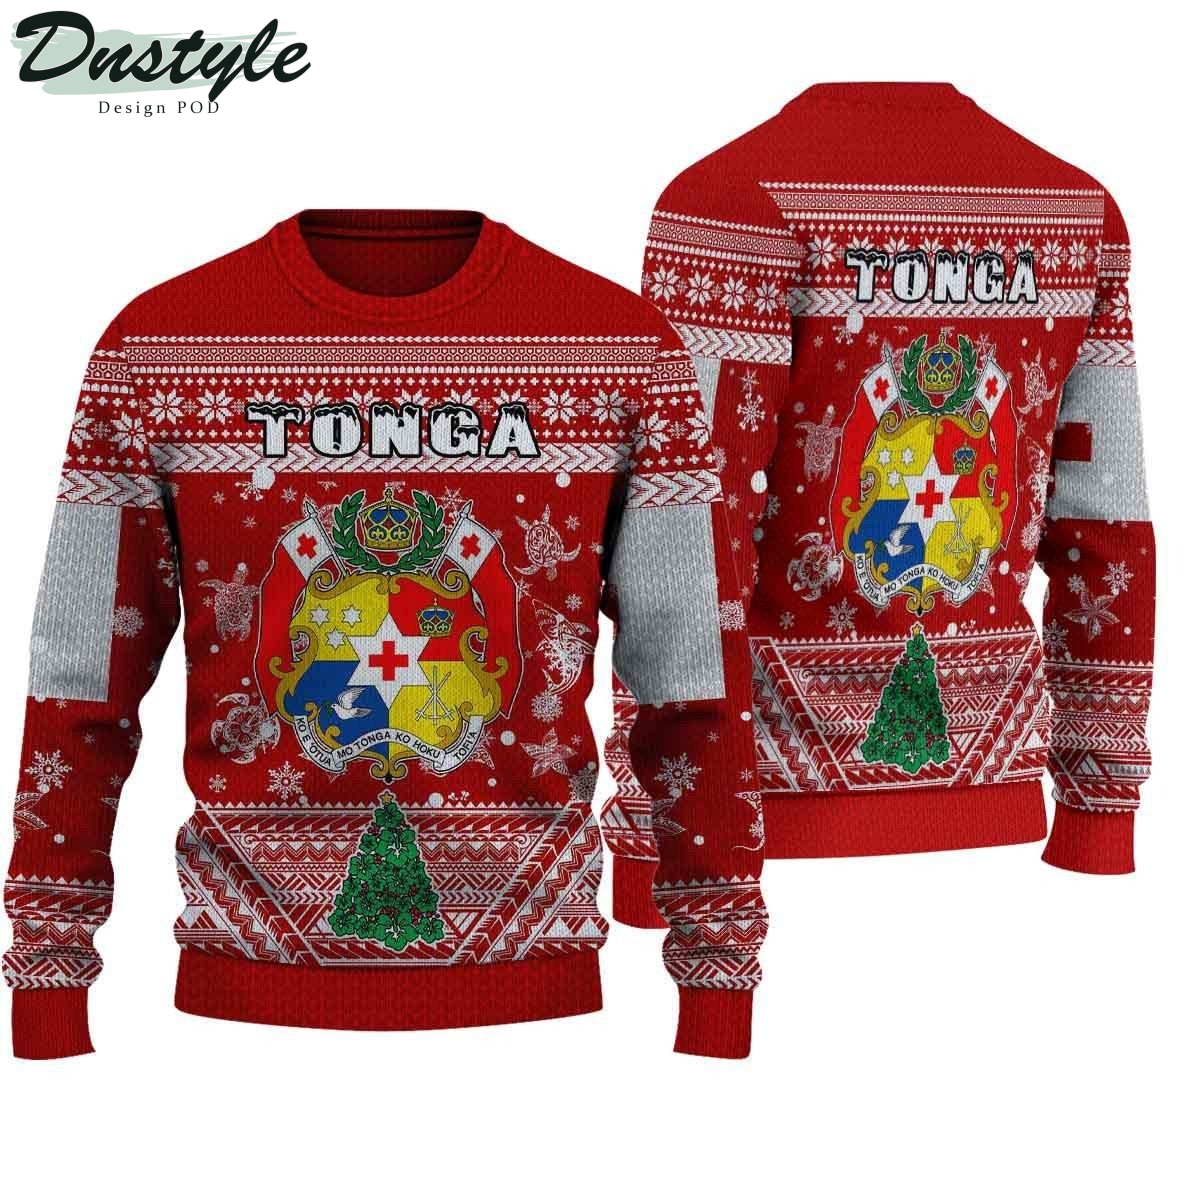 Tonga ugly christmas sweater